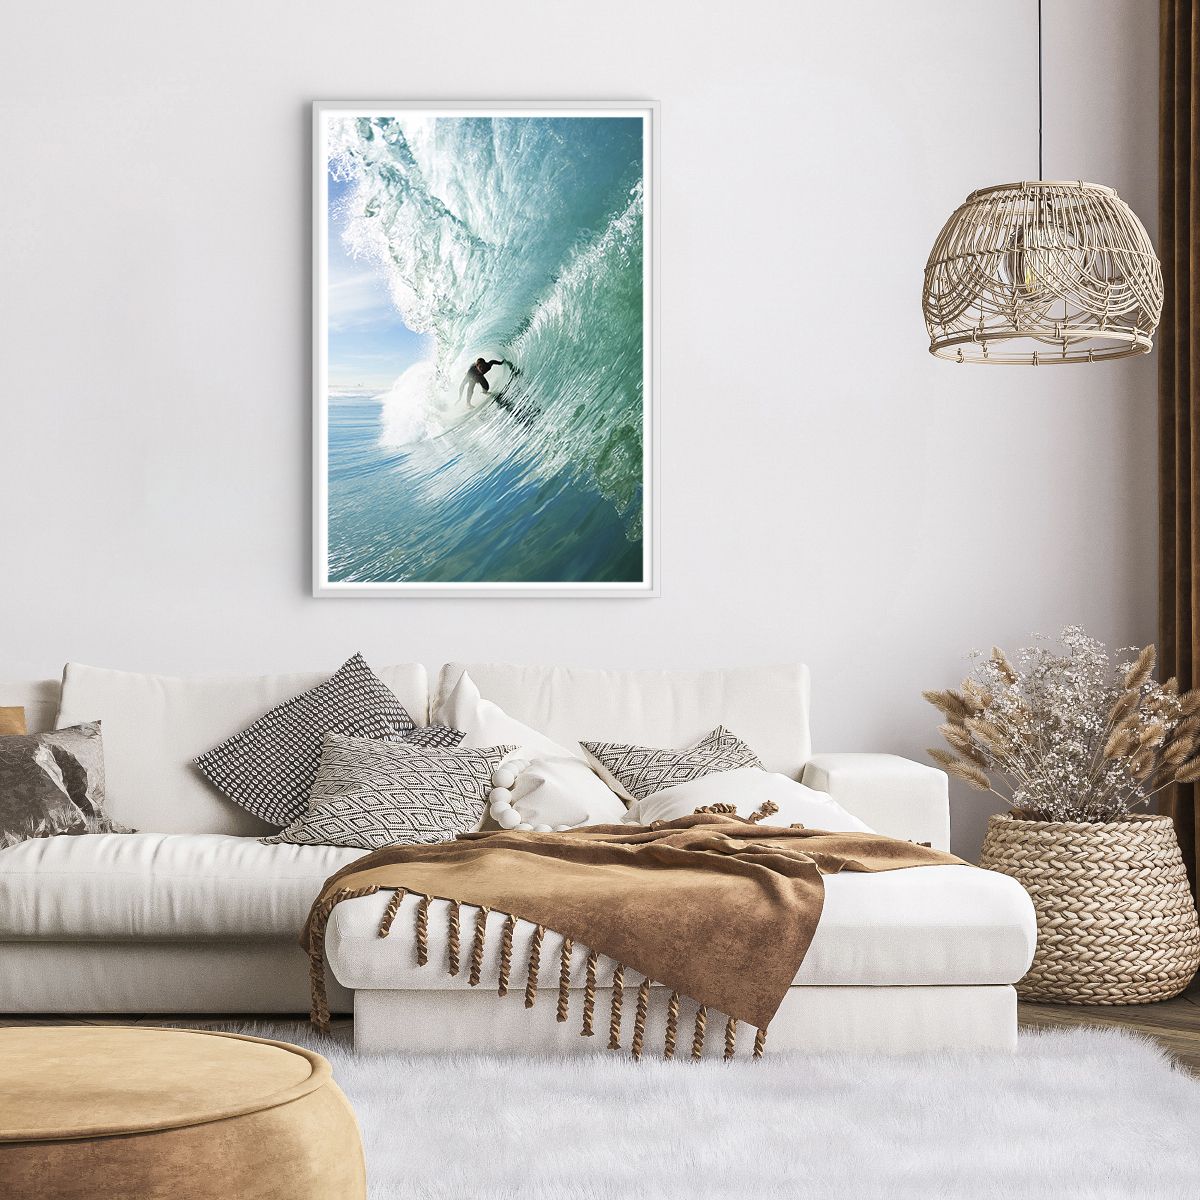 Affiche dans un cadre blanc Paysage, Affiche dans un cadre blanc Océan, Affiche dans un cadre blanc Surfeur, Affiche dans un cadre blanc Sport D'Eau, Affiche dans un cadre blanc Hawaii